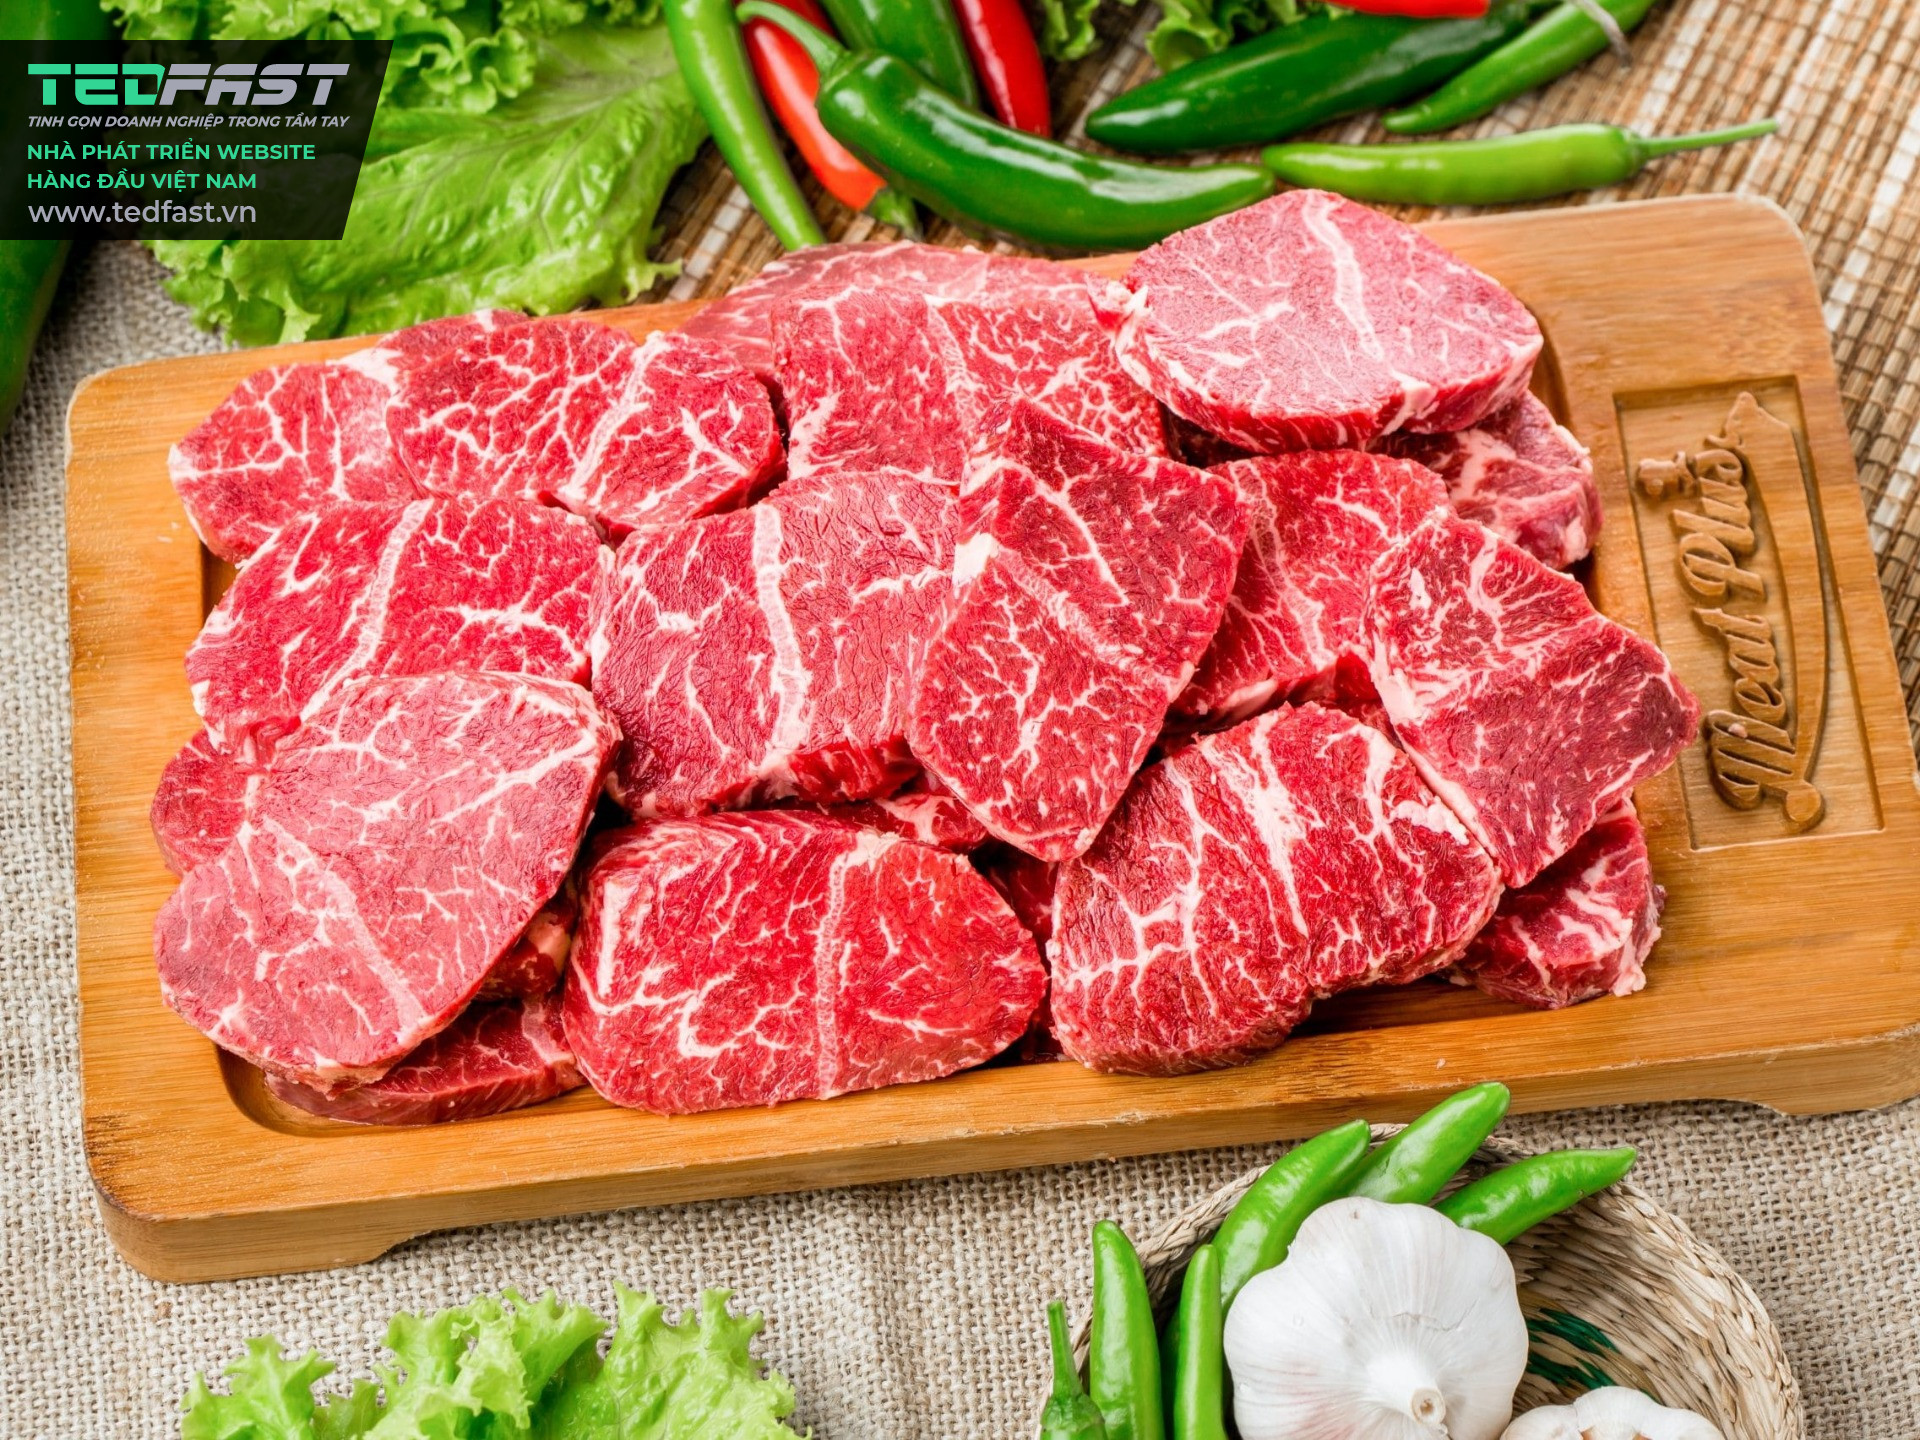 Bài viết giới thiệu tham khảo dành cho công ty chuyên nhập khẩu và phân phối các thực phẩm thịt chất lượng - Công ty thương mại quốc tế tổng hợp PTP